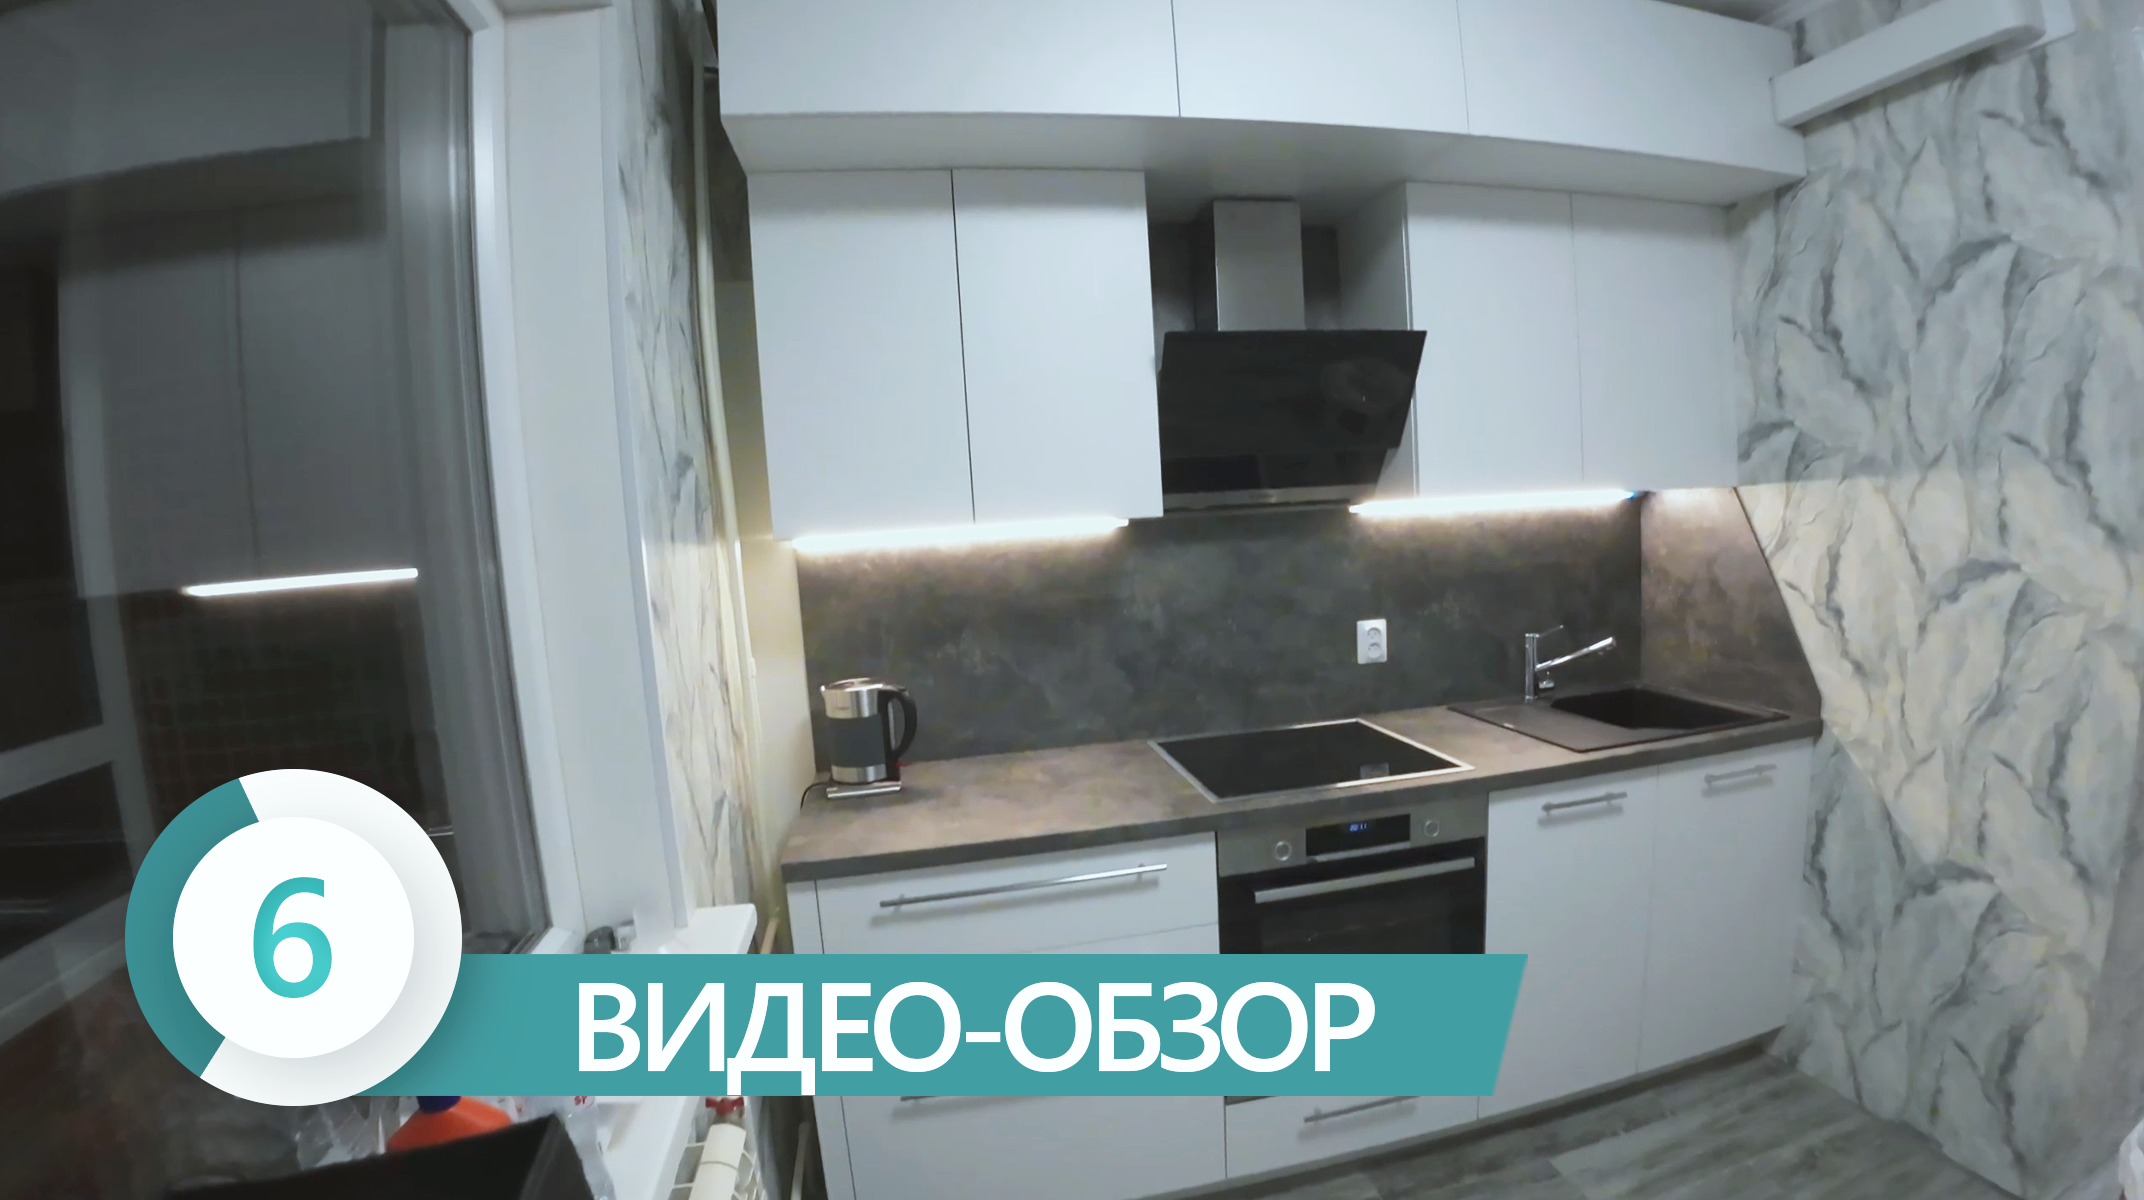 Видео обзор №6 Кухня СПб проспект Энтузиастов